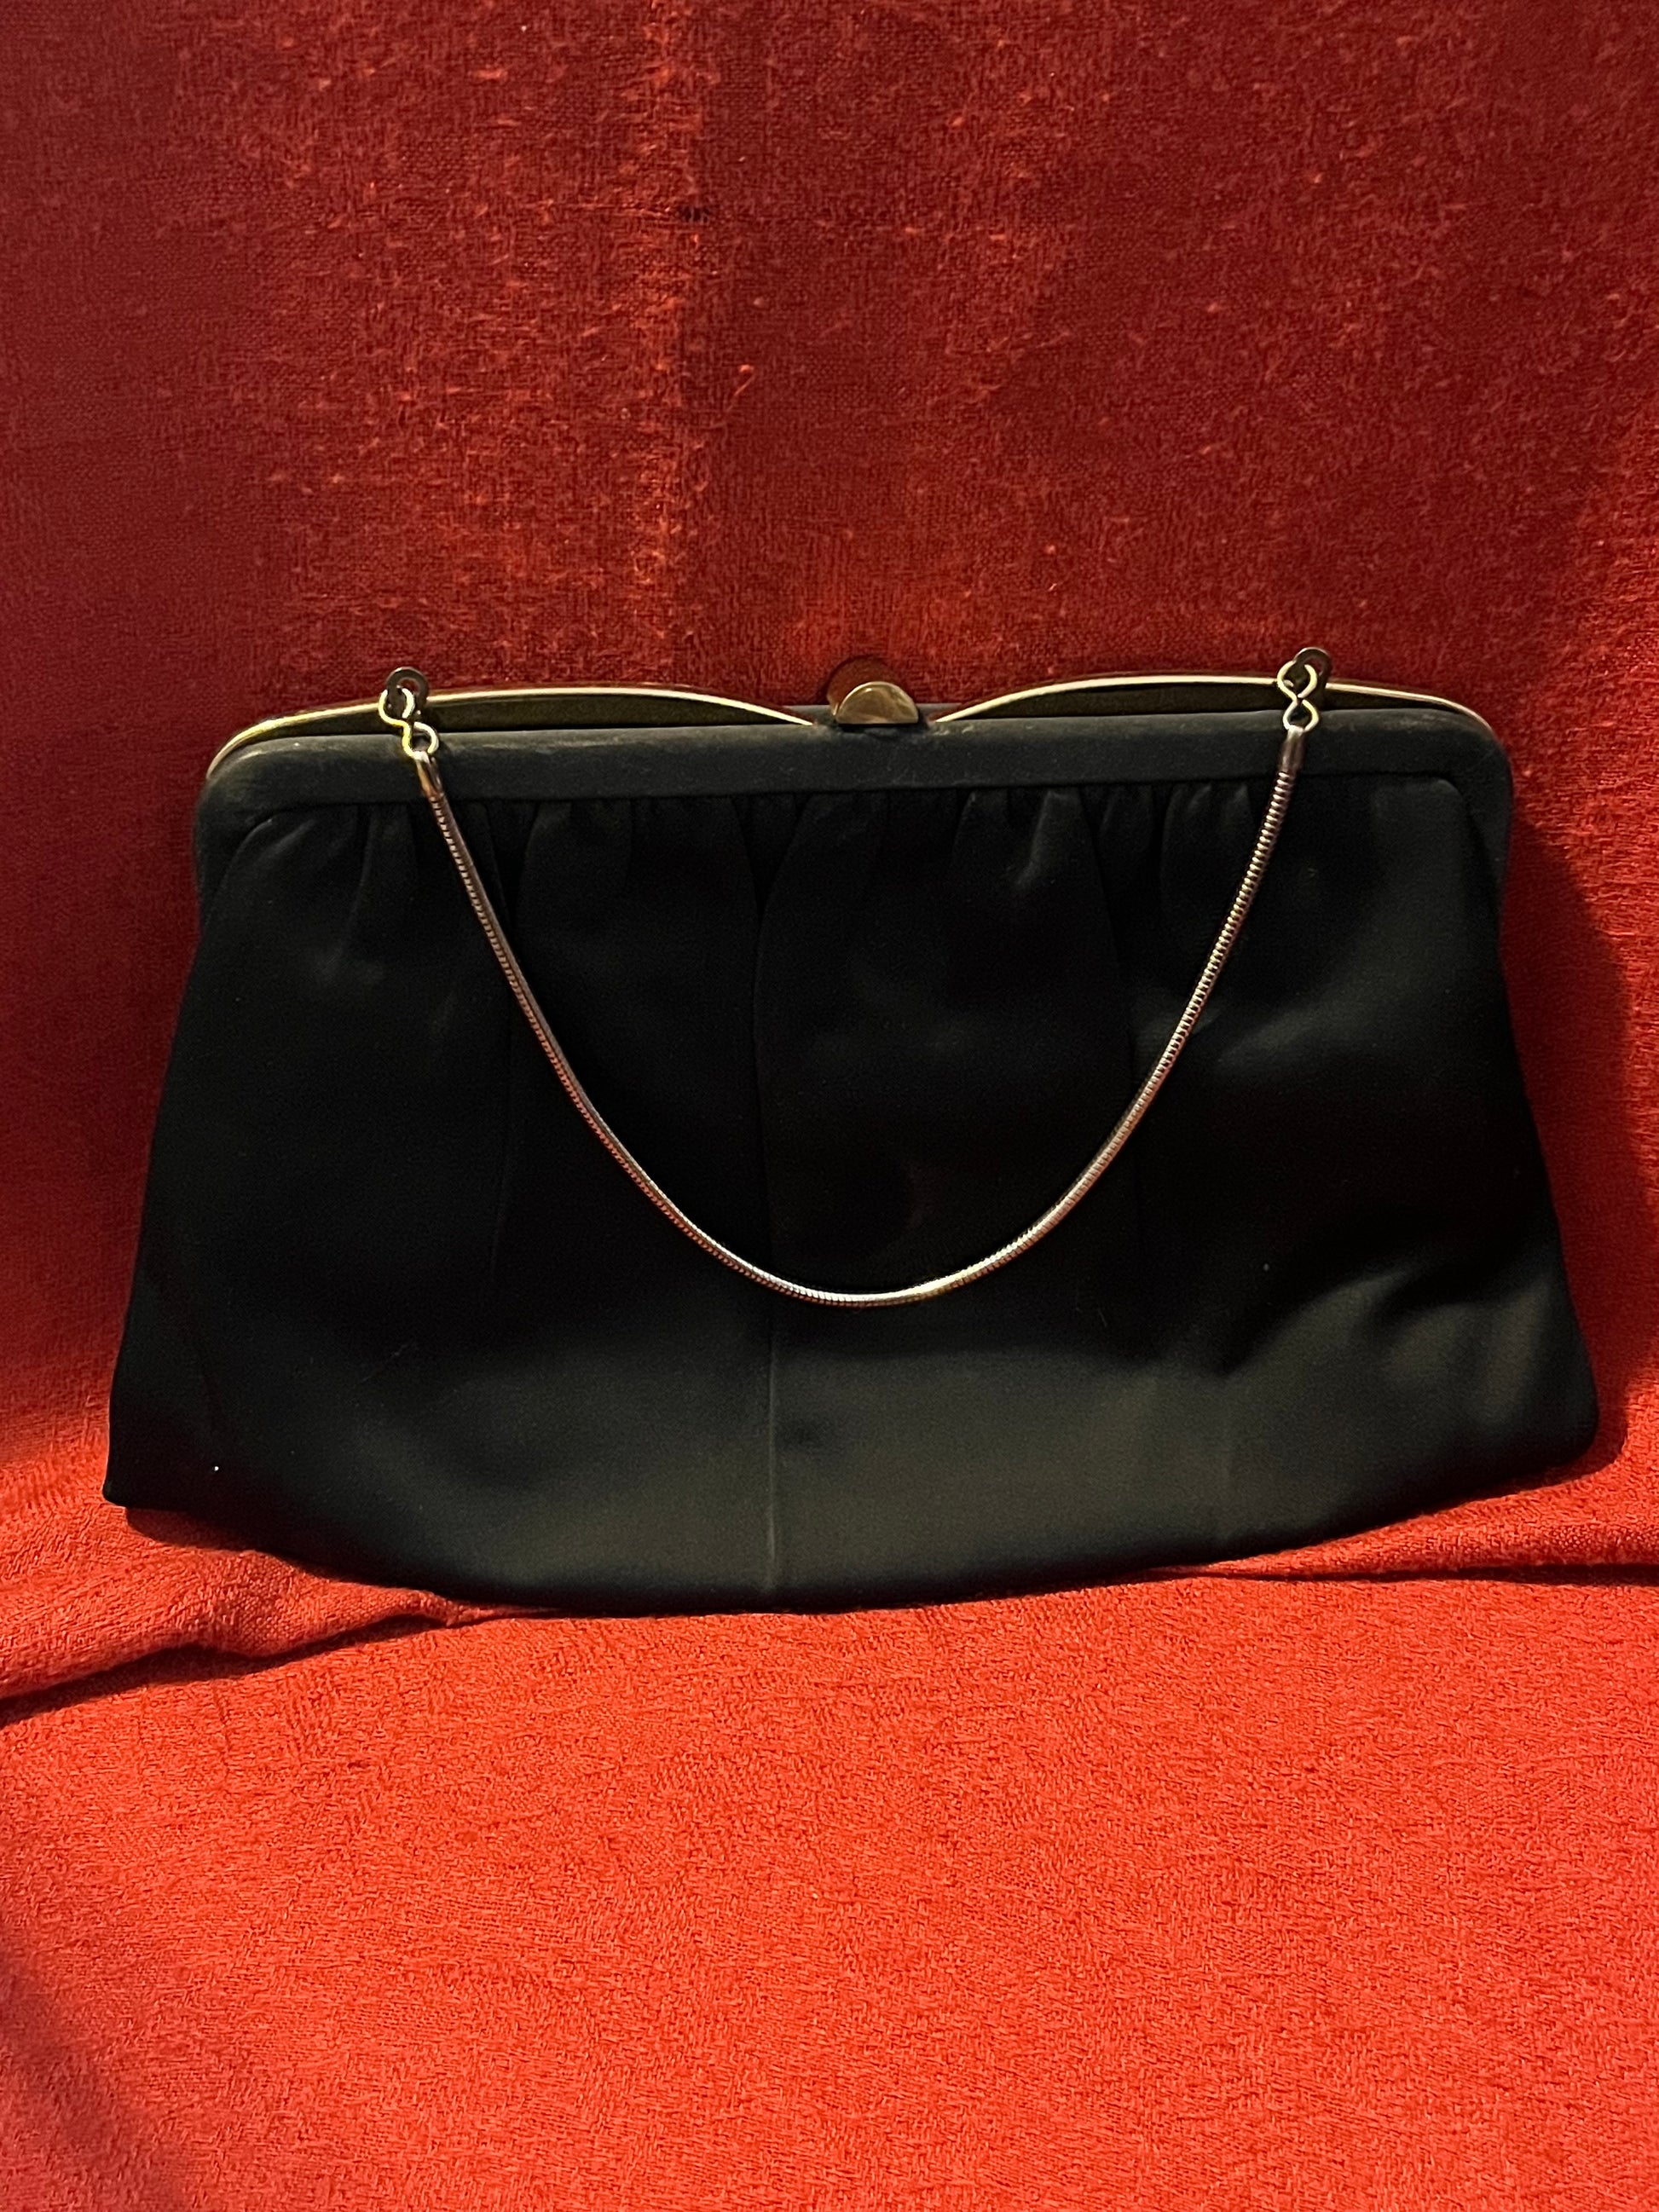 Vintage Clutch Purse  1920s Black Velvet Evening Bag